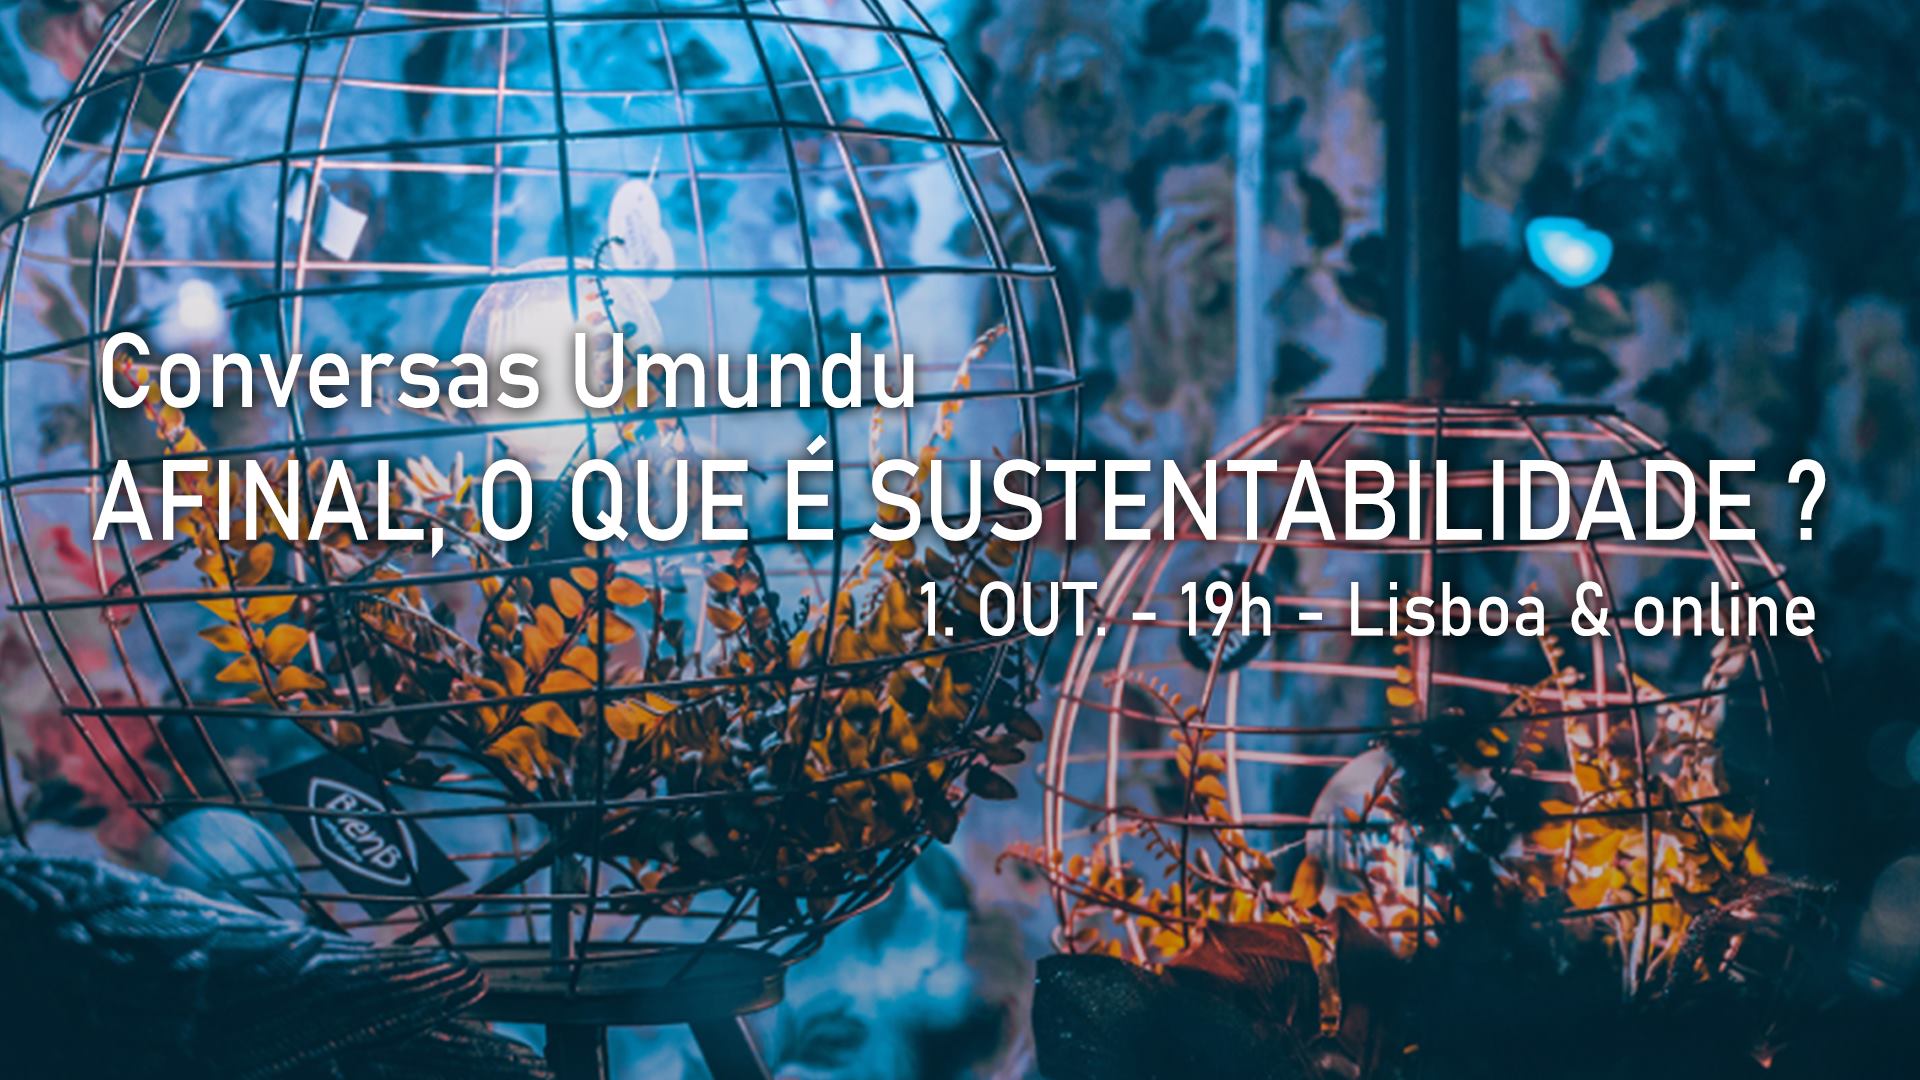 Afinal, o que é Sustentabilidade?